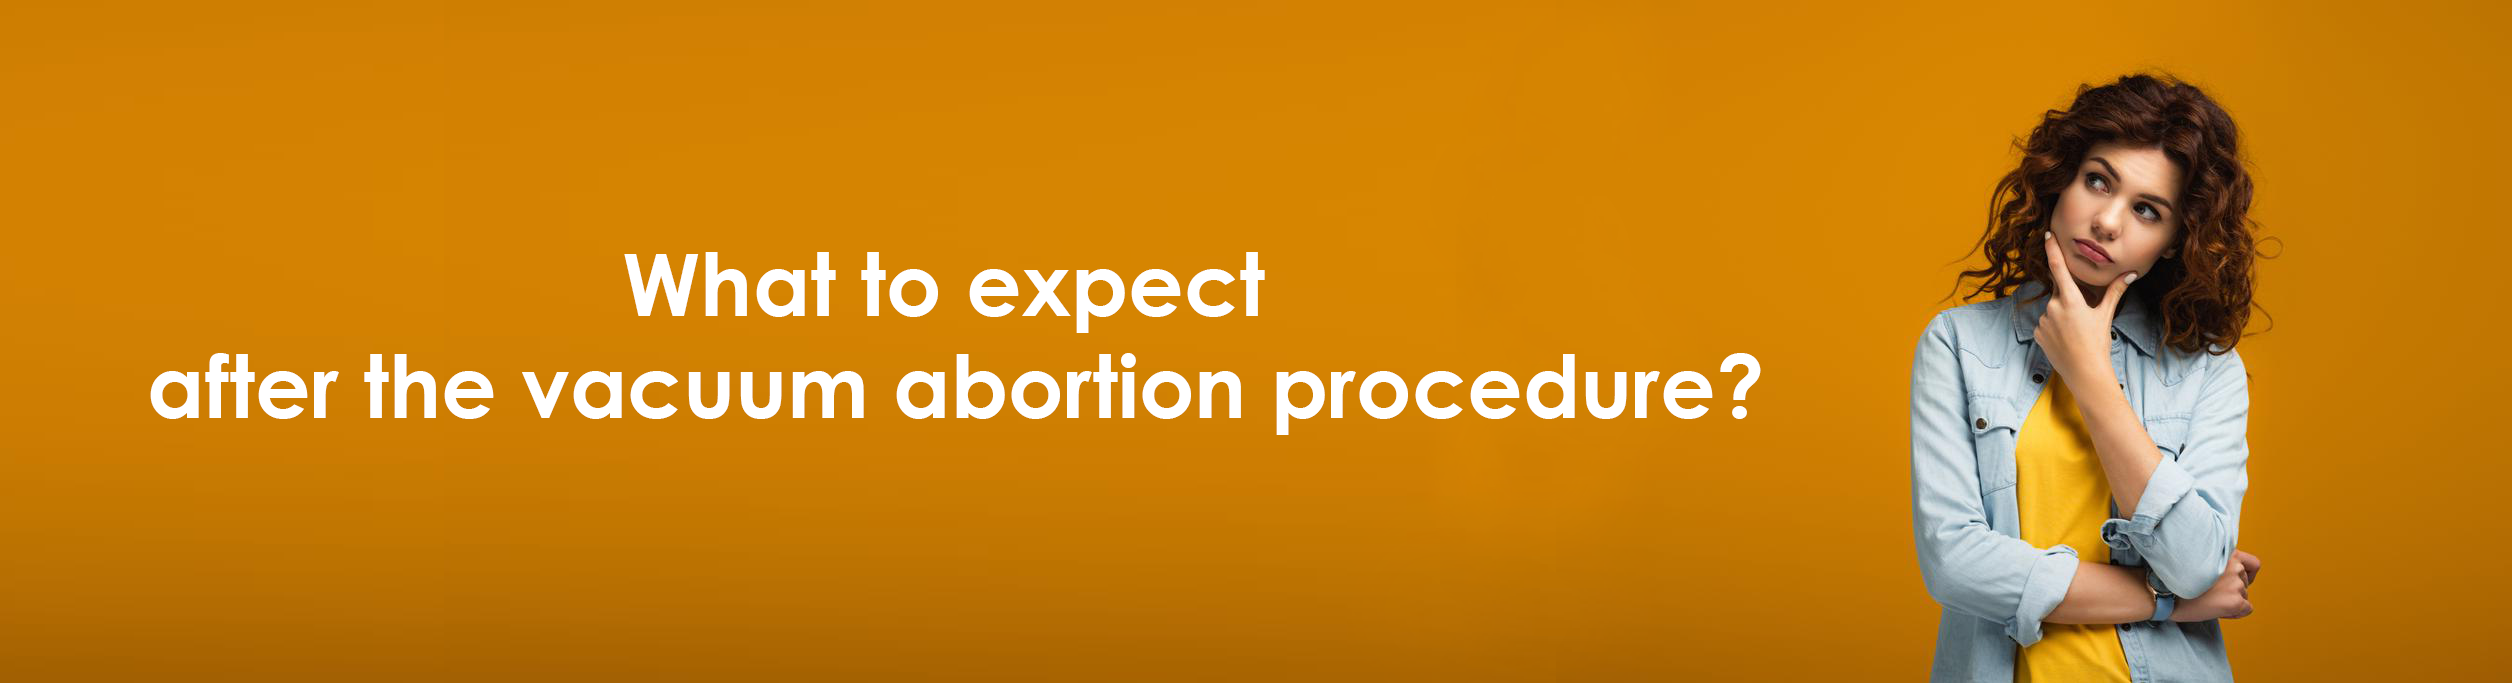 Чего ожидать после вакуумного аборта в Киеве